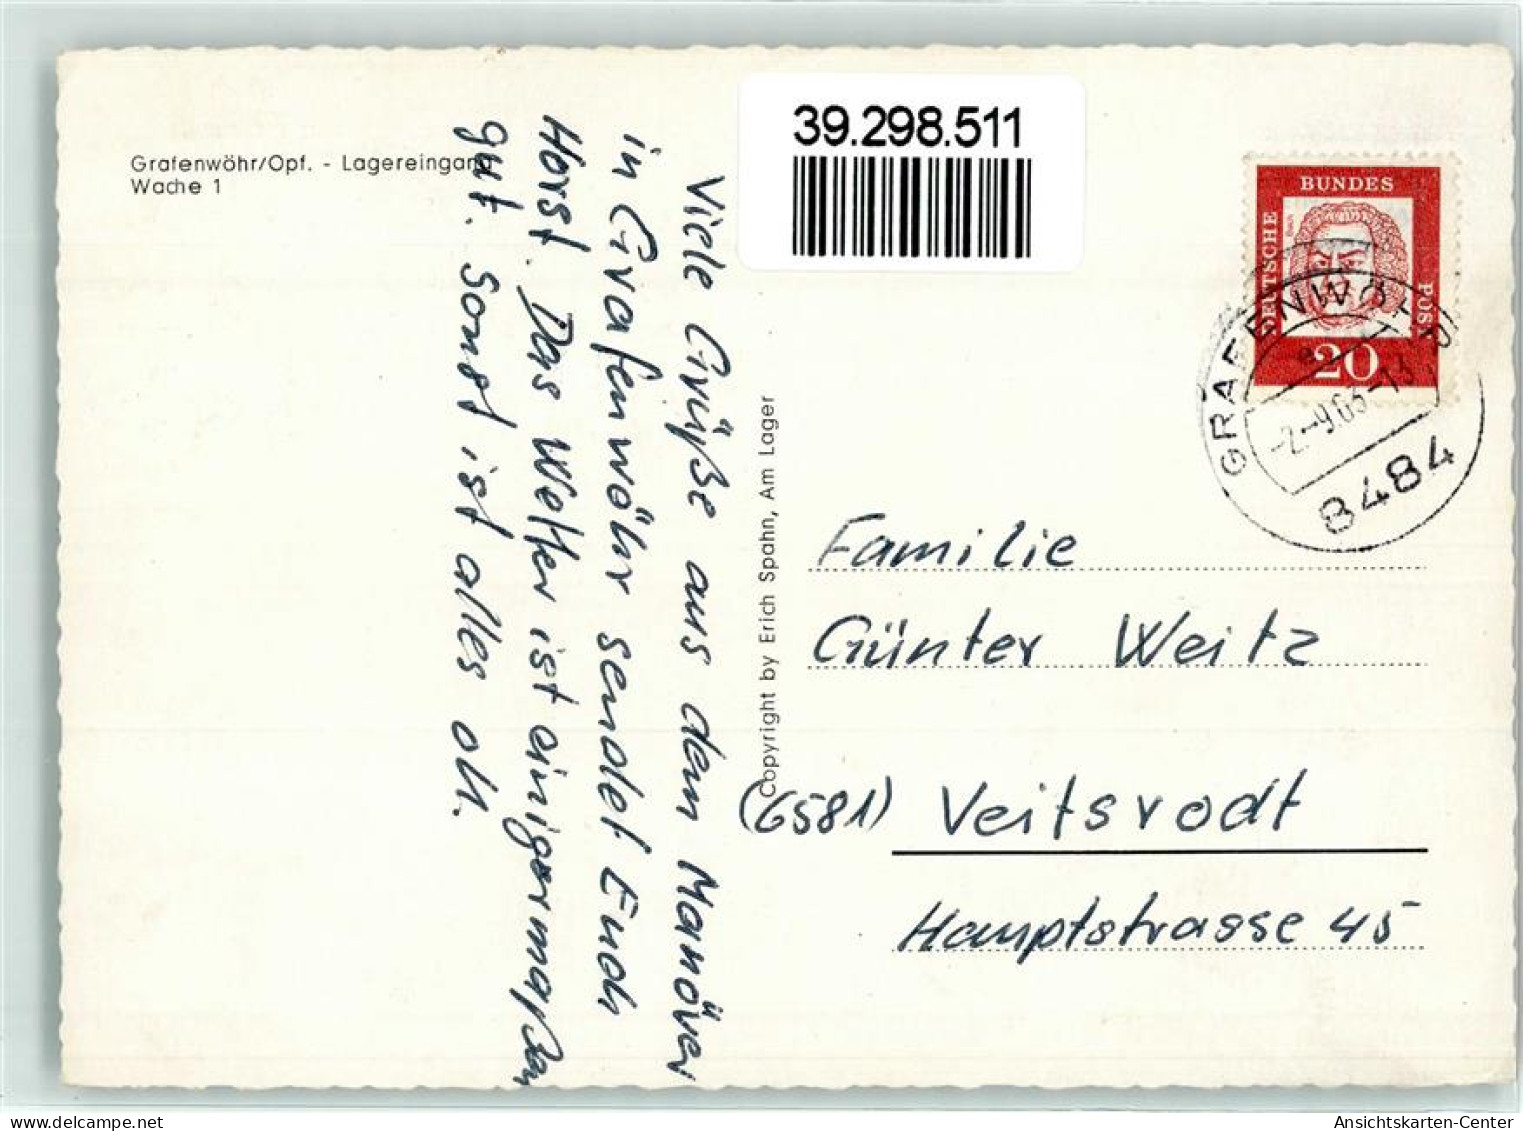 39298511 - Grafenwoehr - Grafenwöhr